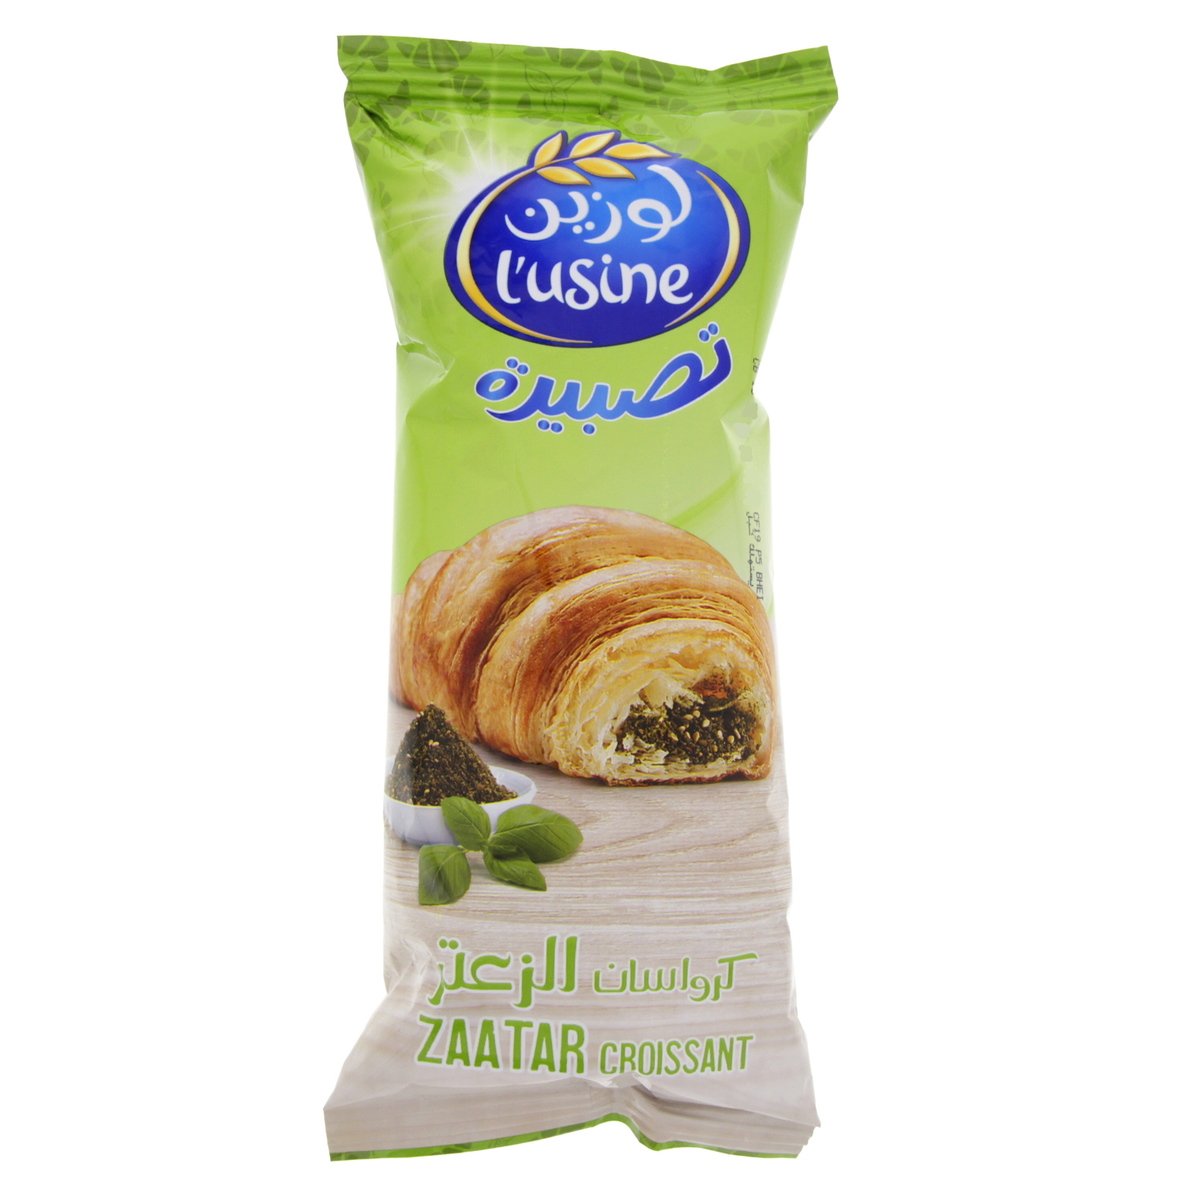 Lusine Zaatar Croissant 60g